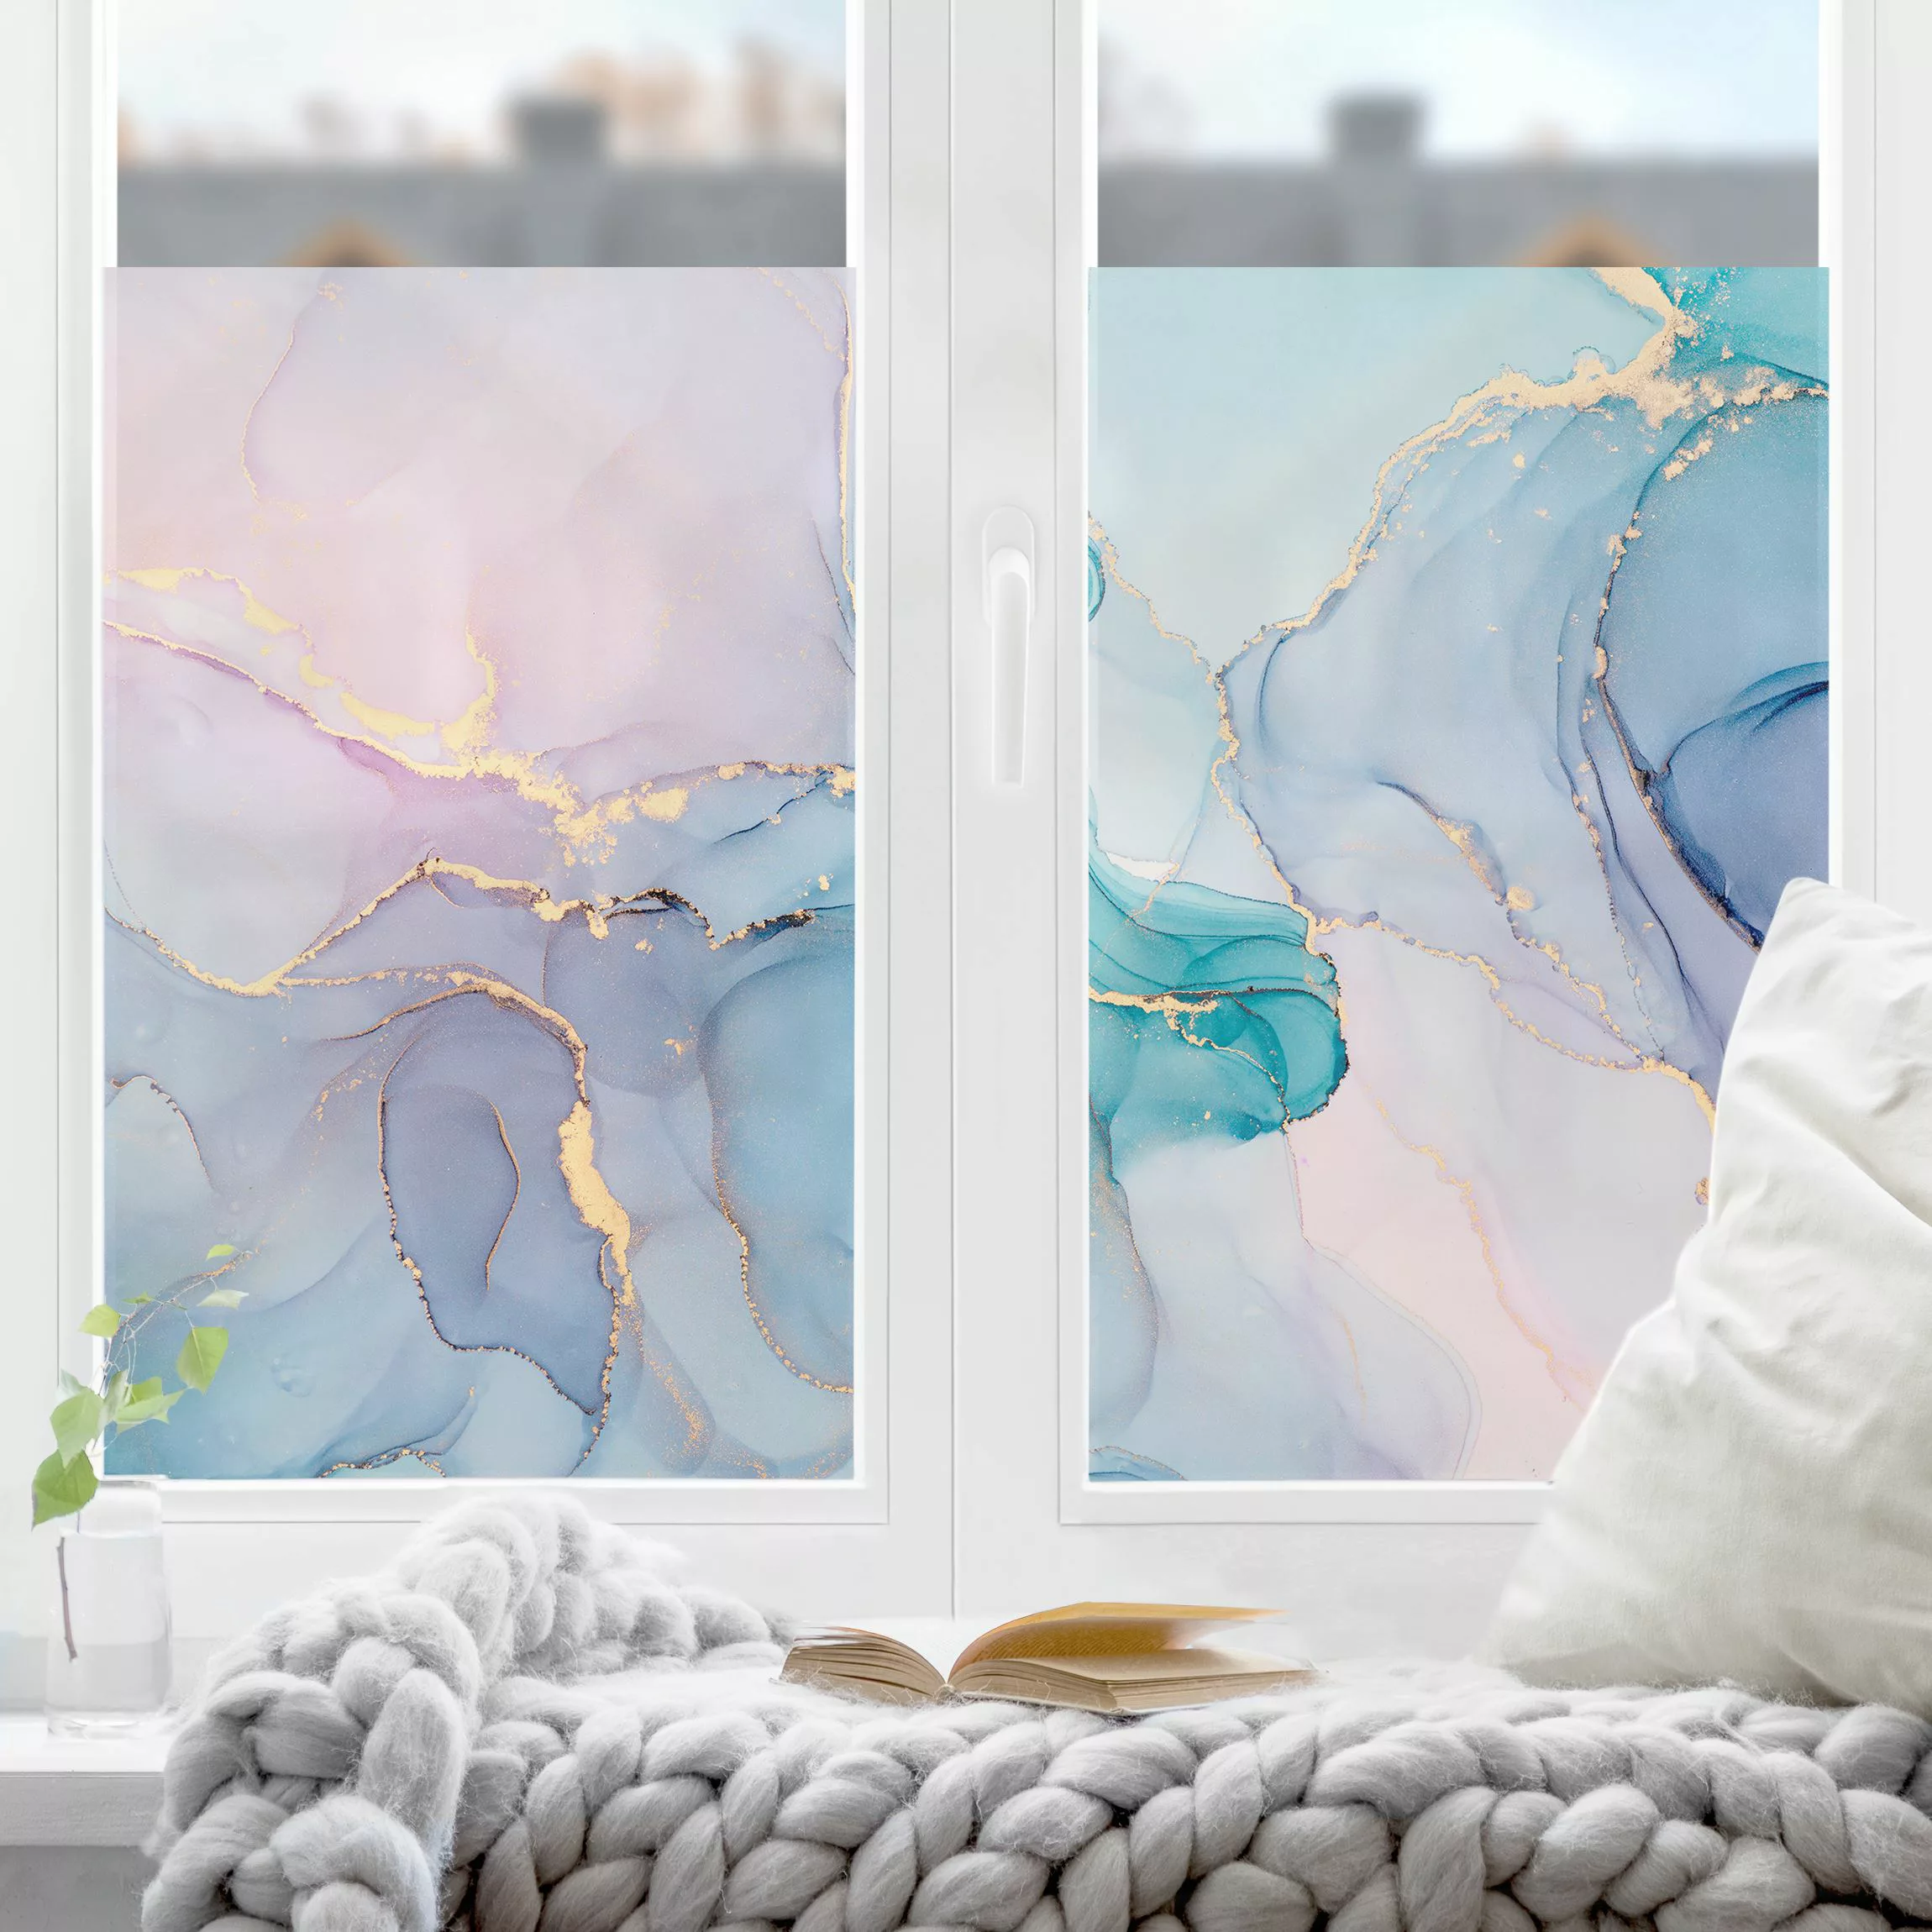 Fensterfolie Aquarell Pastell Türkis mit Gold günstig online kaufen